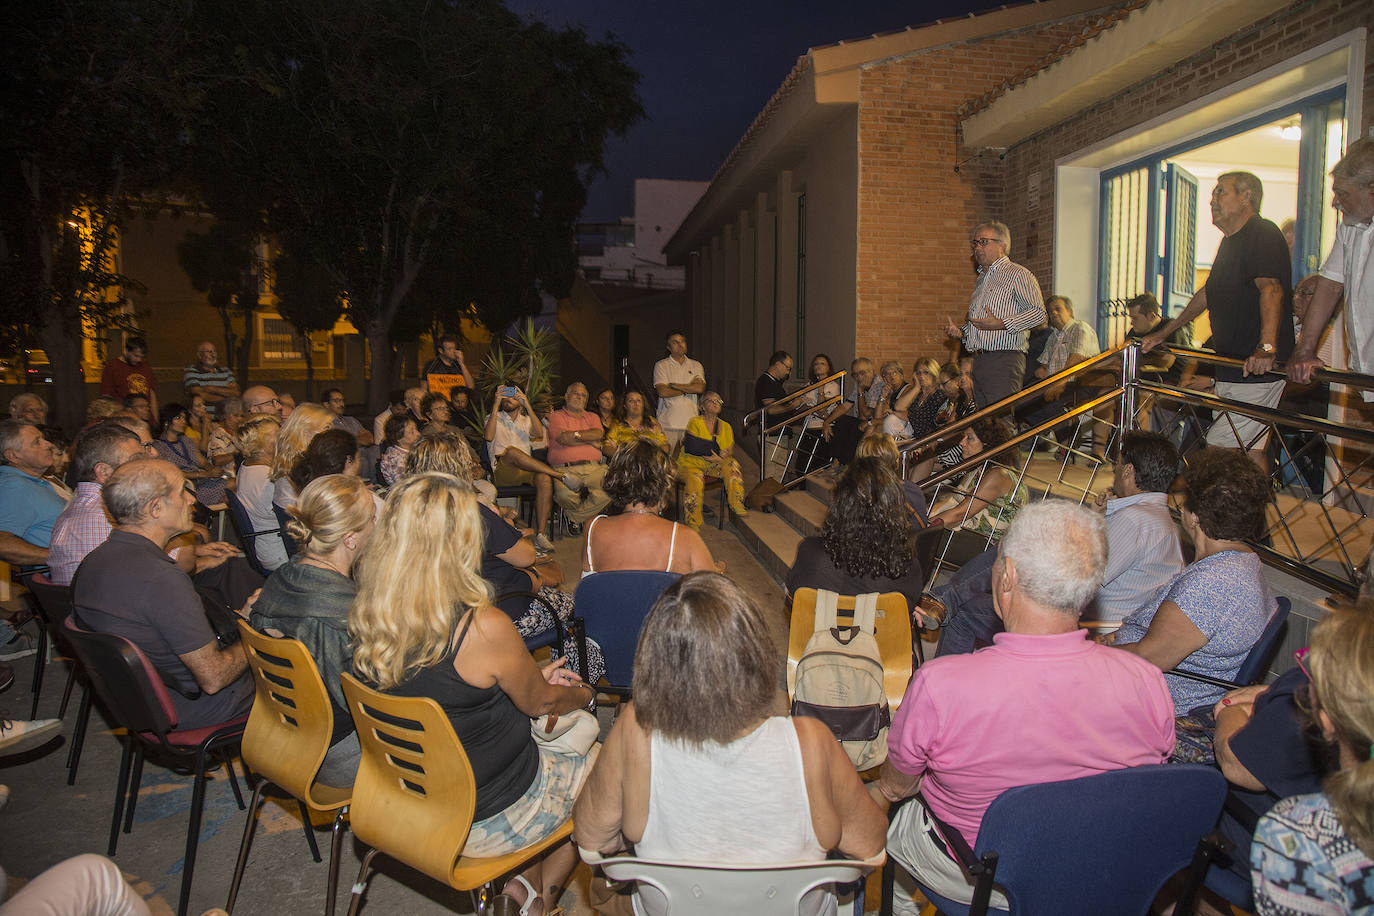 «SOS Mar Menor». Con ese mensaje, la Federación de Asociaciones de Vecinos y una docena de colectivos sociales han convocado una manifestación por las calles de Cartagena, para exigir «de una vez por todas la regeneración de la laguna salada».